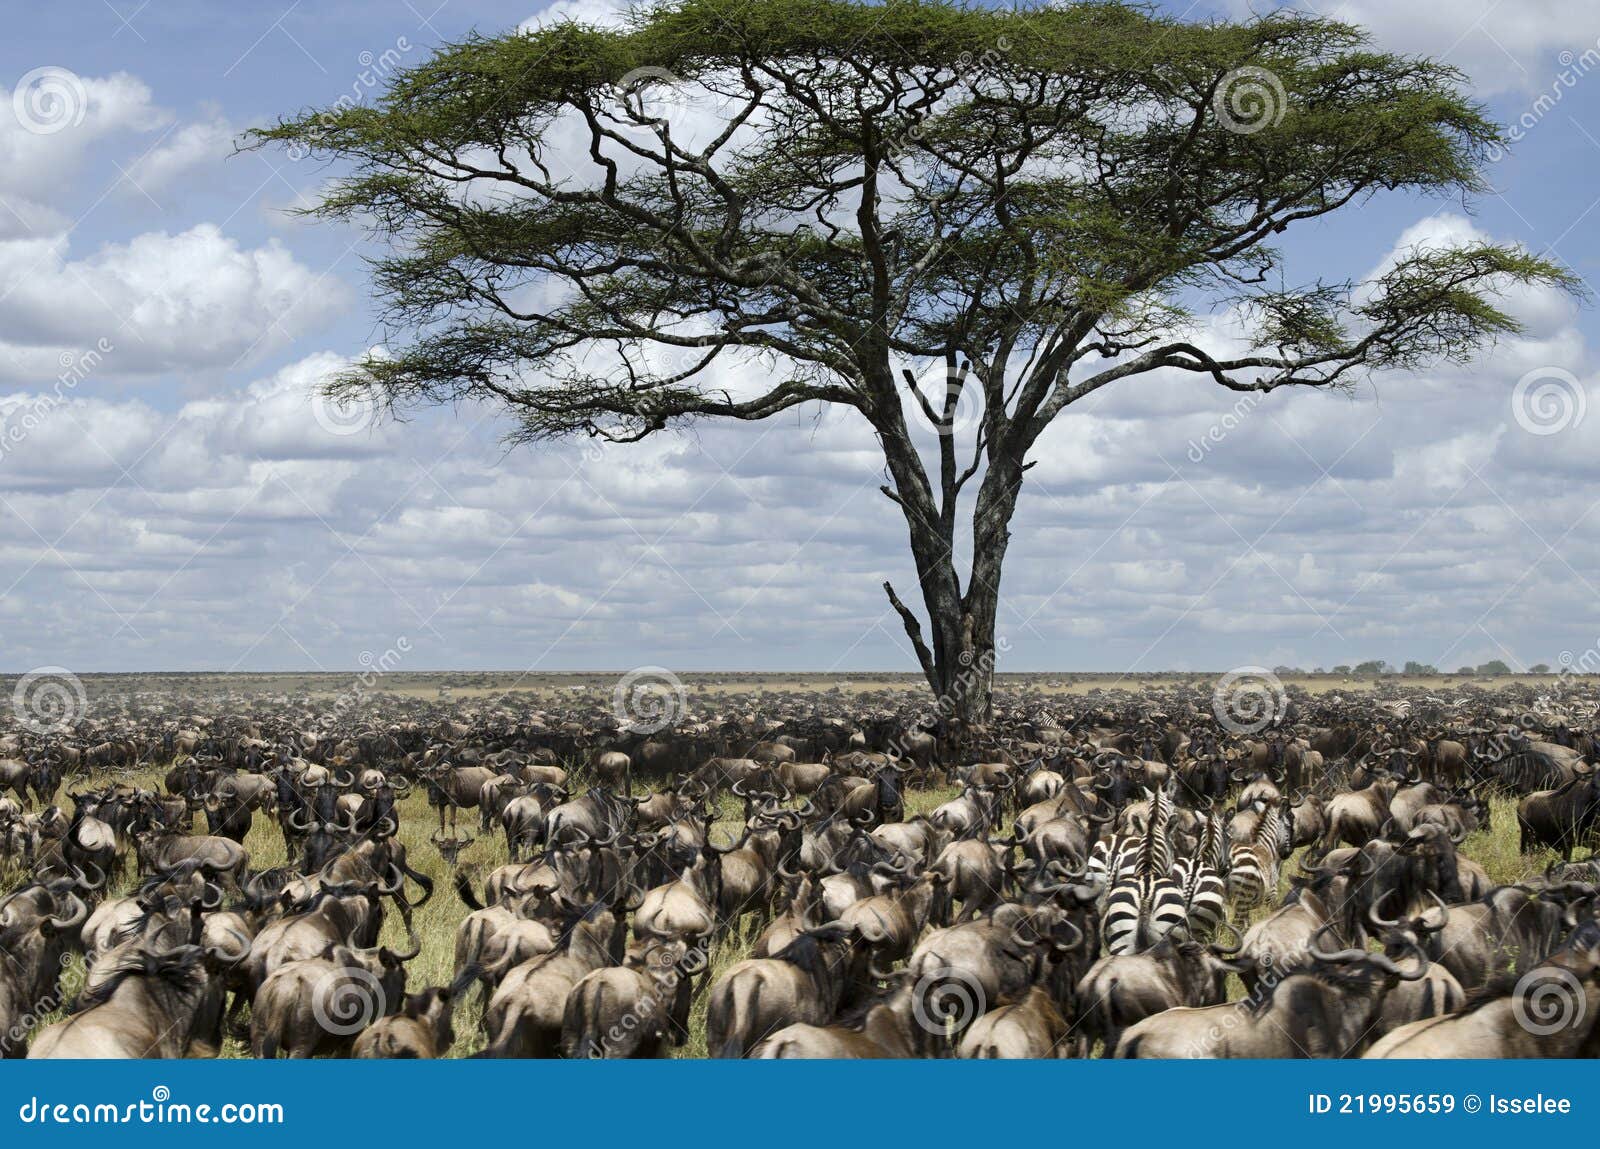 herd of wildebeest migrating in serengeti